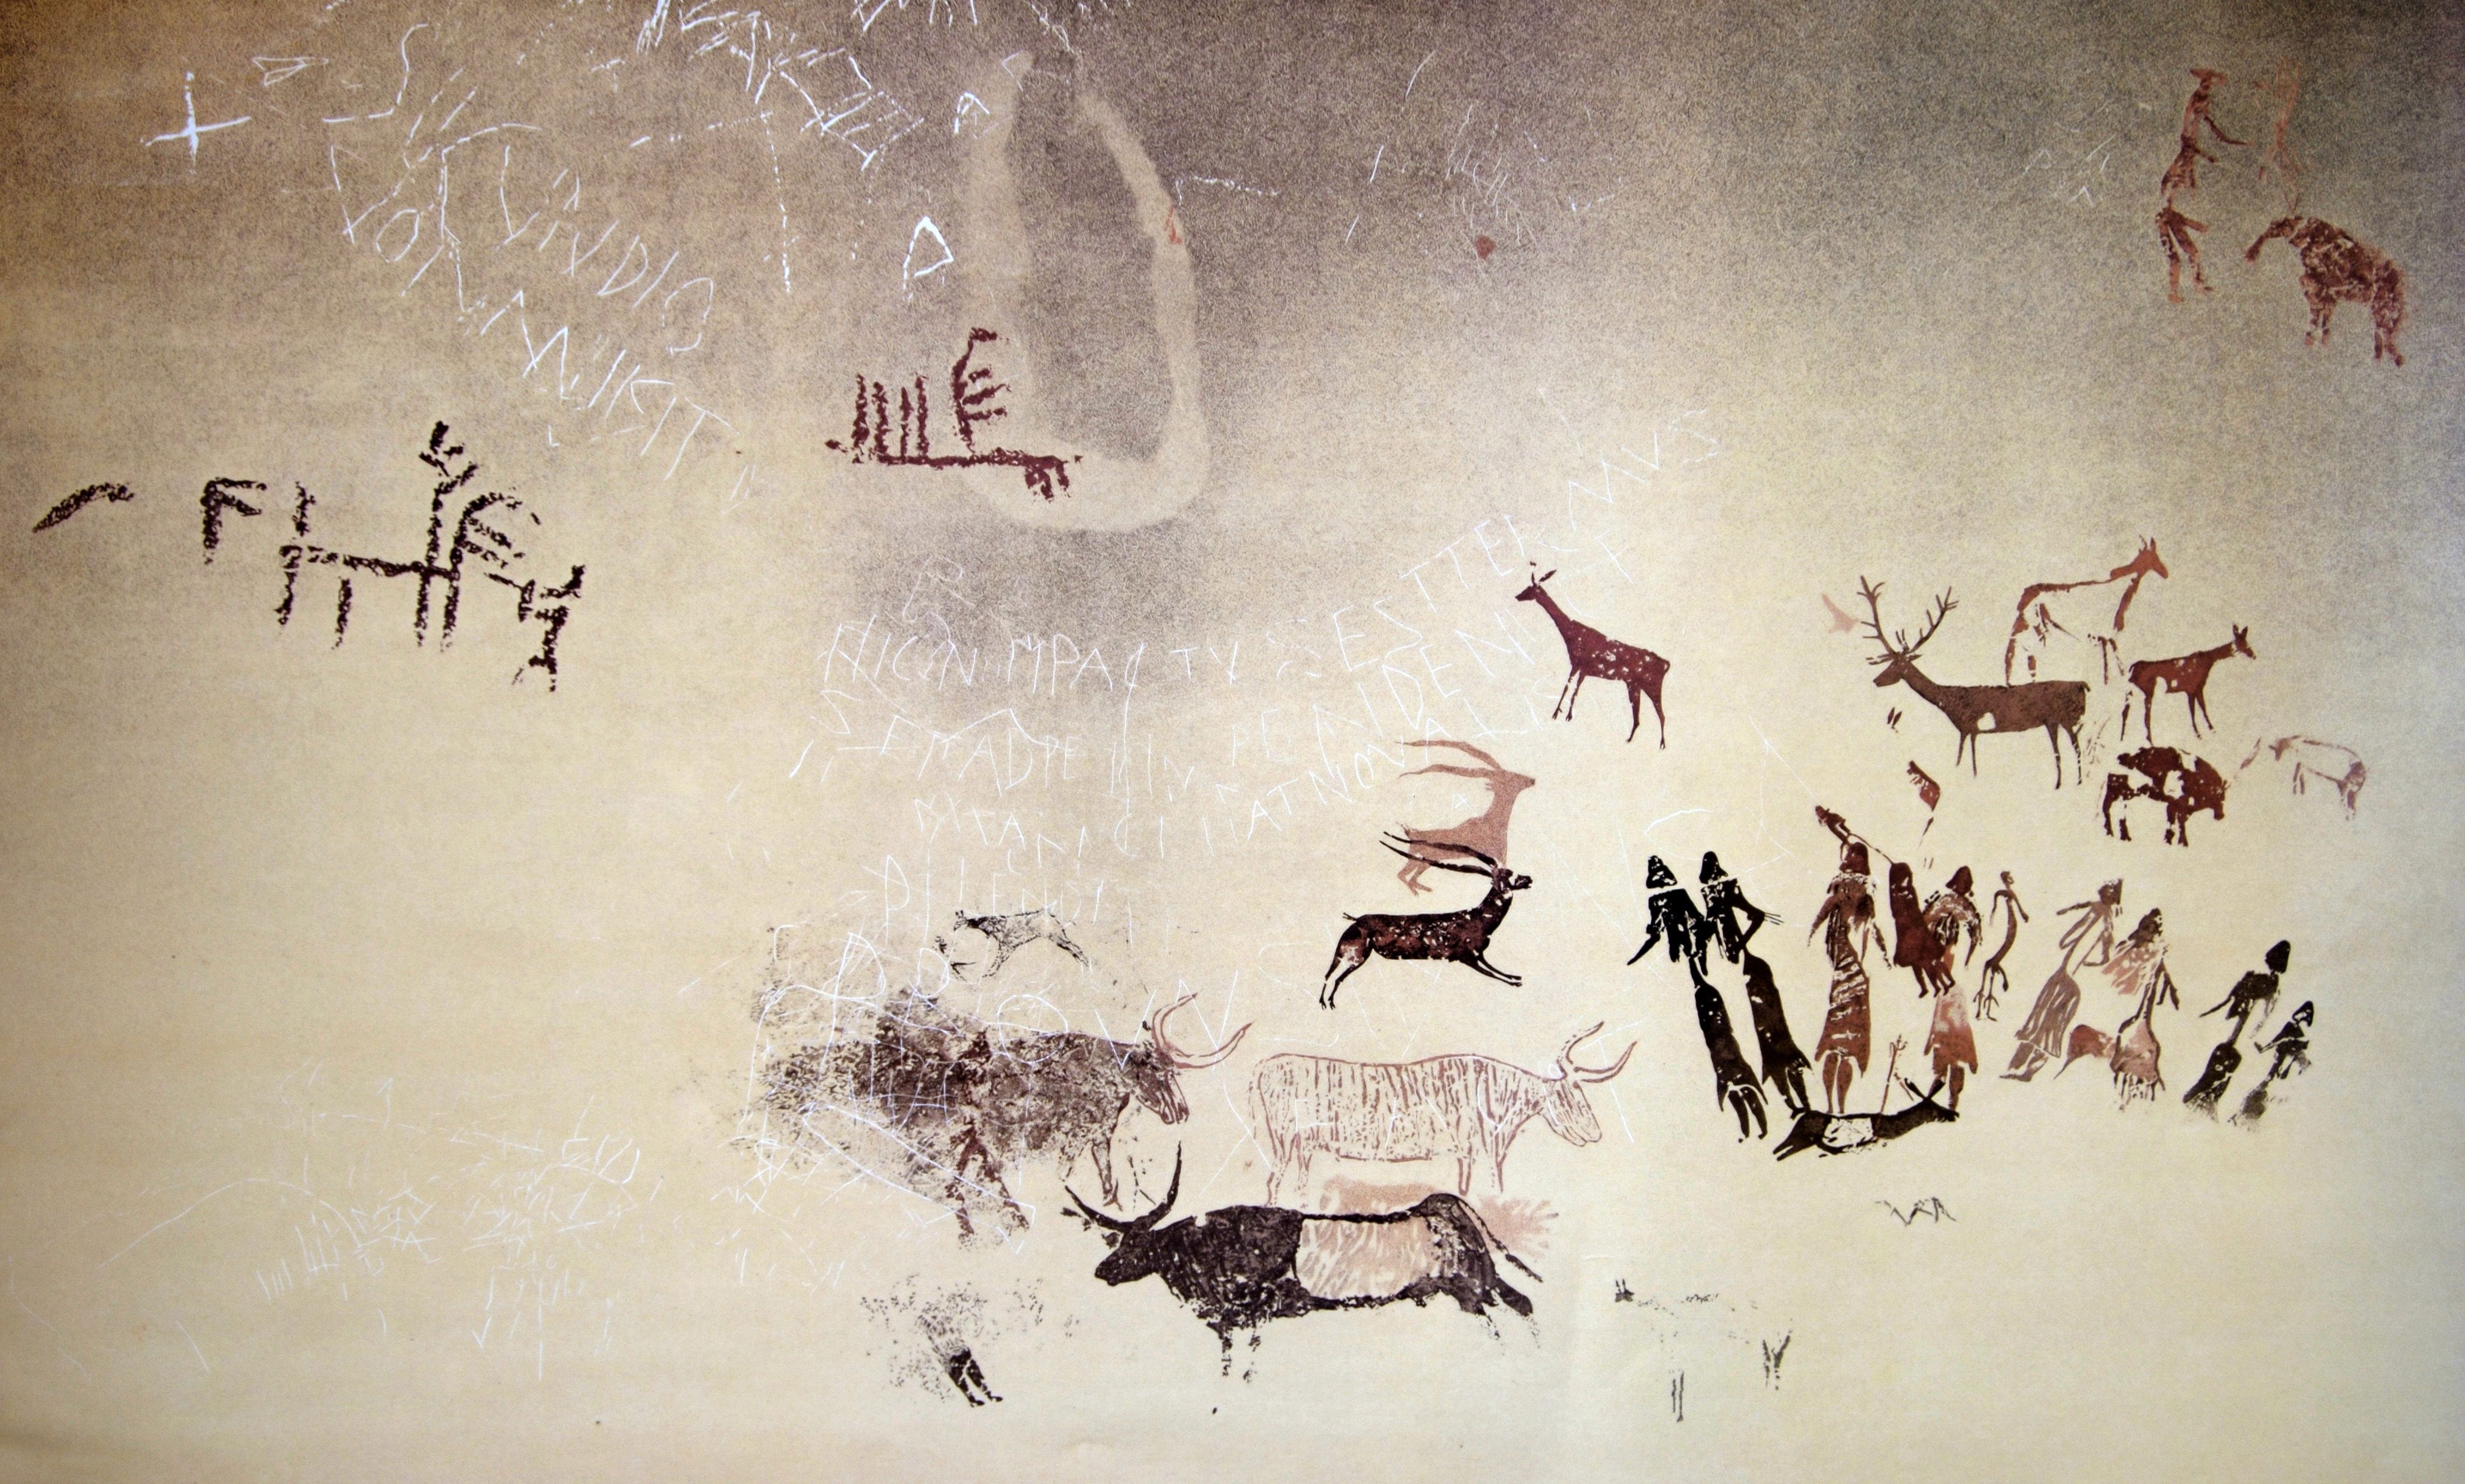 Calc de pintures rupestres de la Roca dels Moros del Cogul